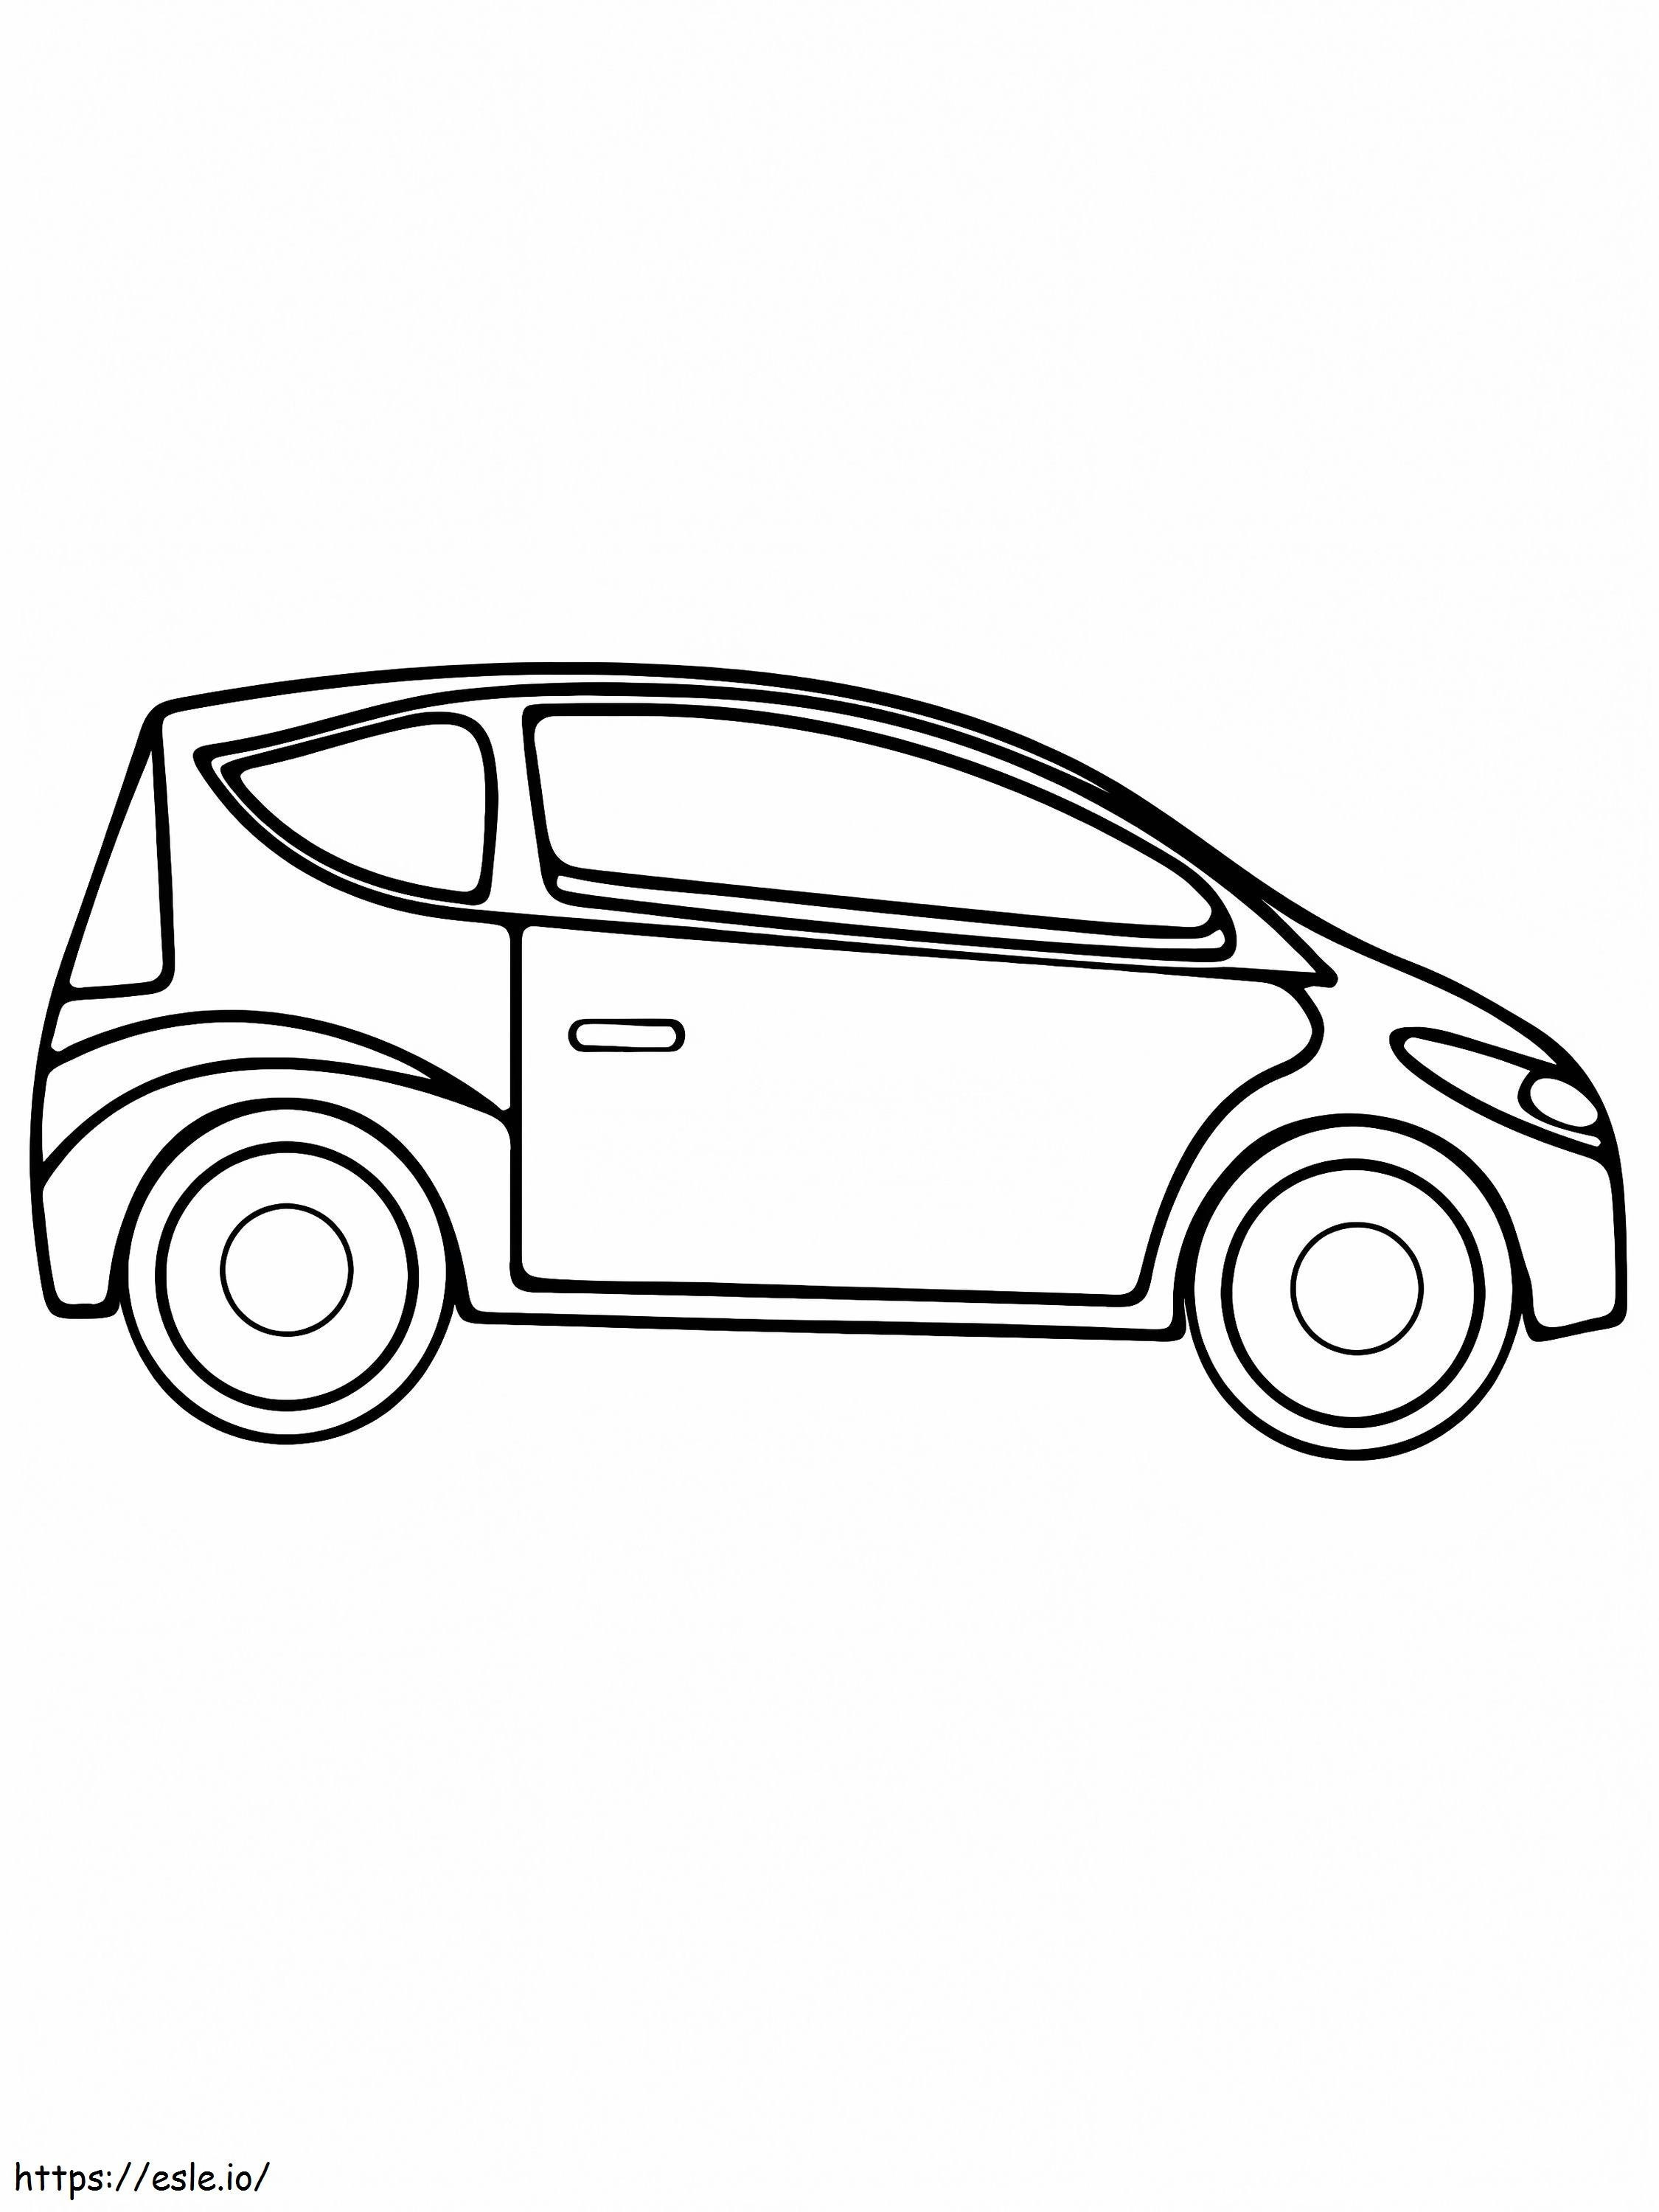 Einfaches Mikroauto-Design ausmalbilder